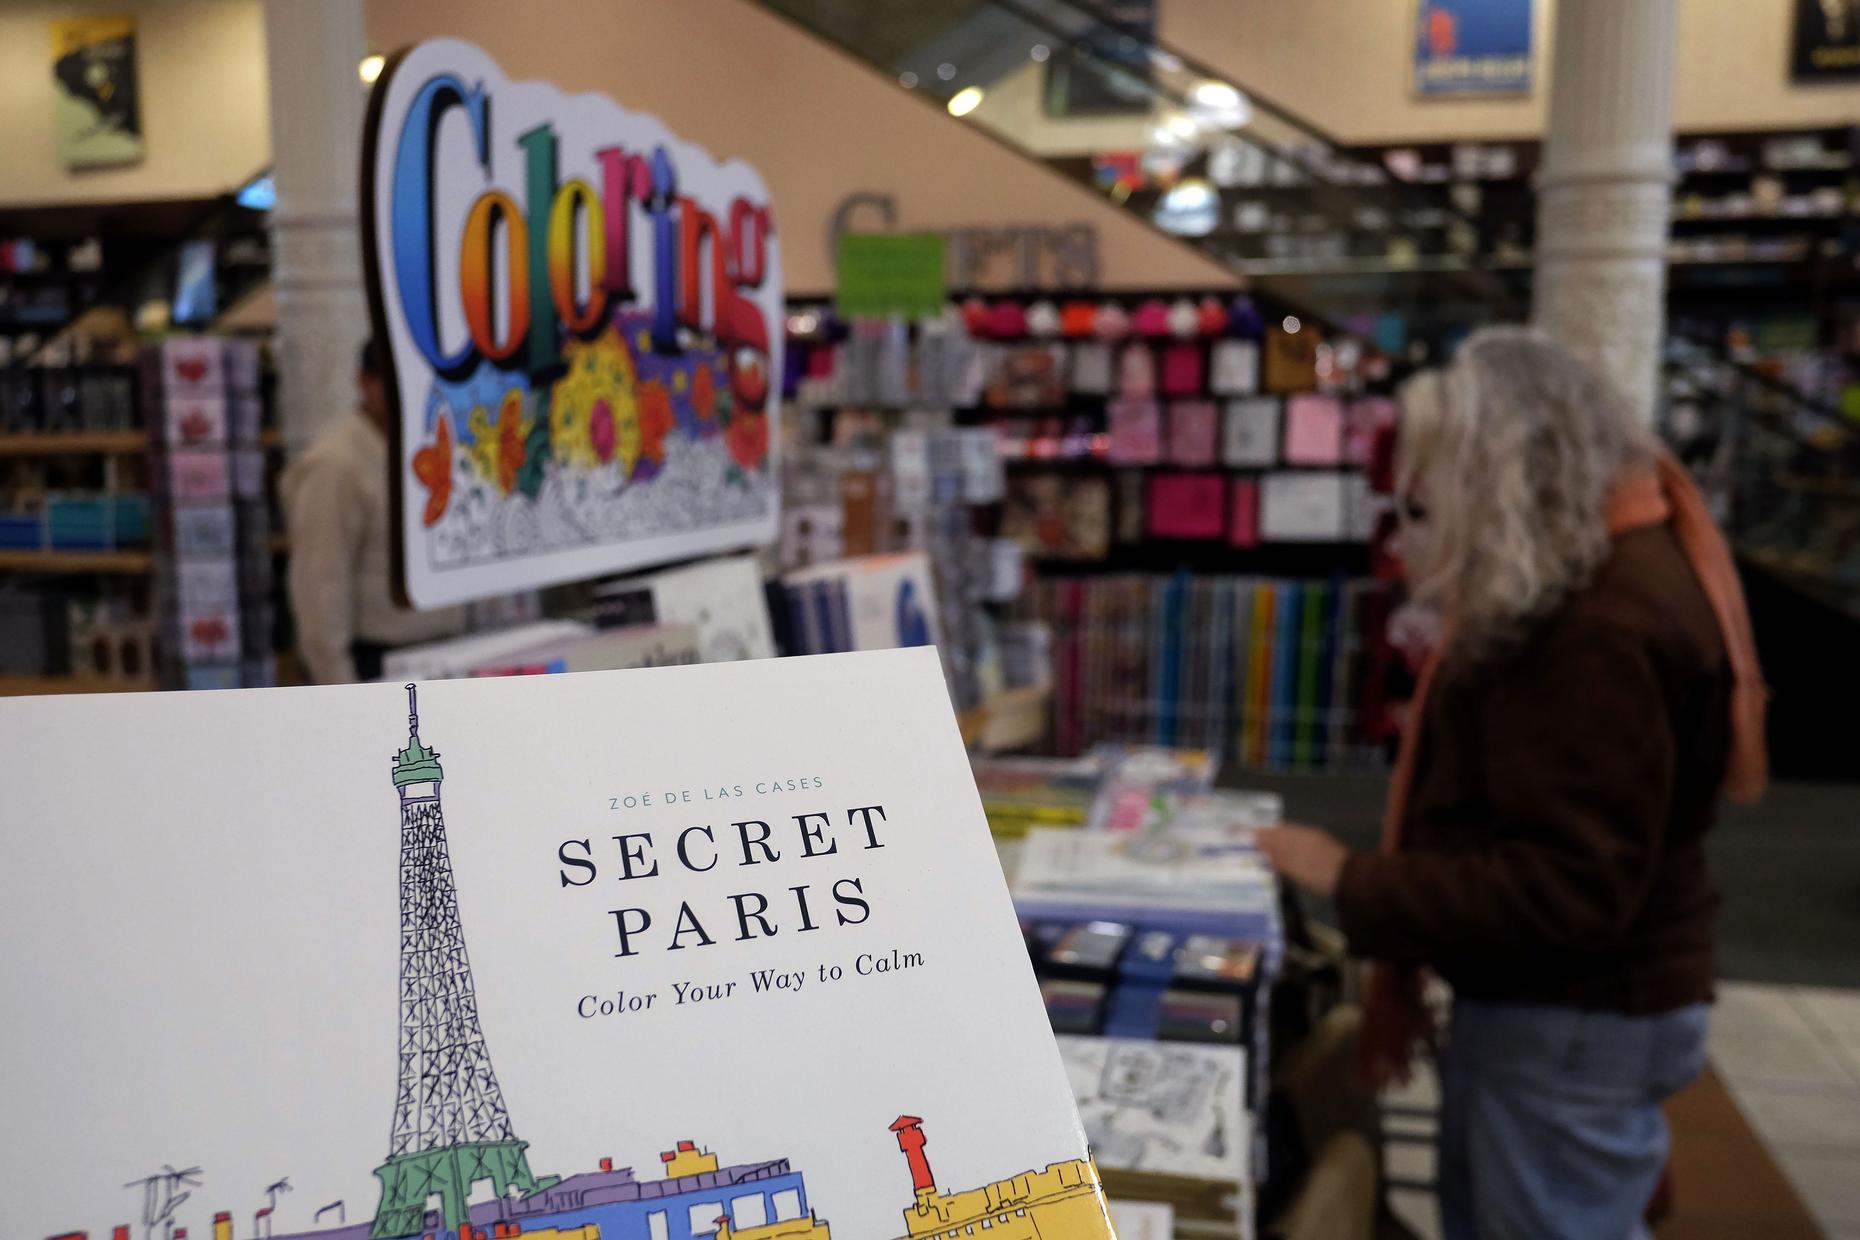 Secret Paris by Zoe de Las Cases